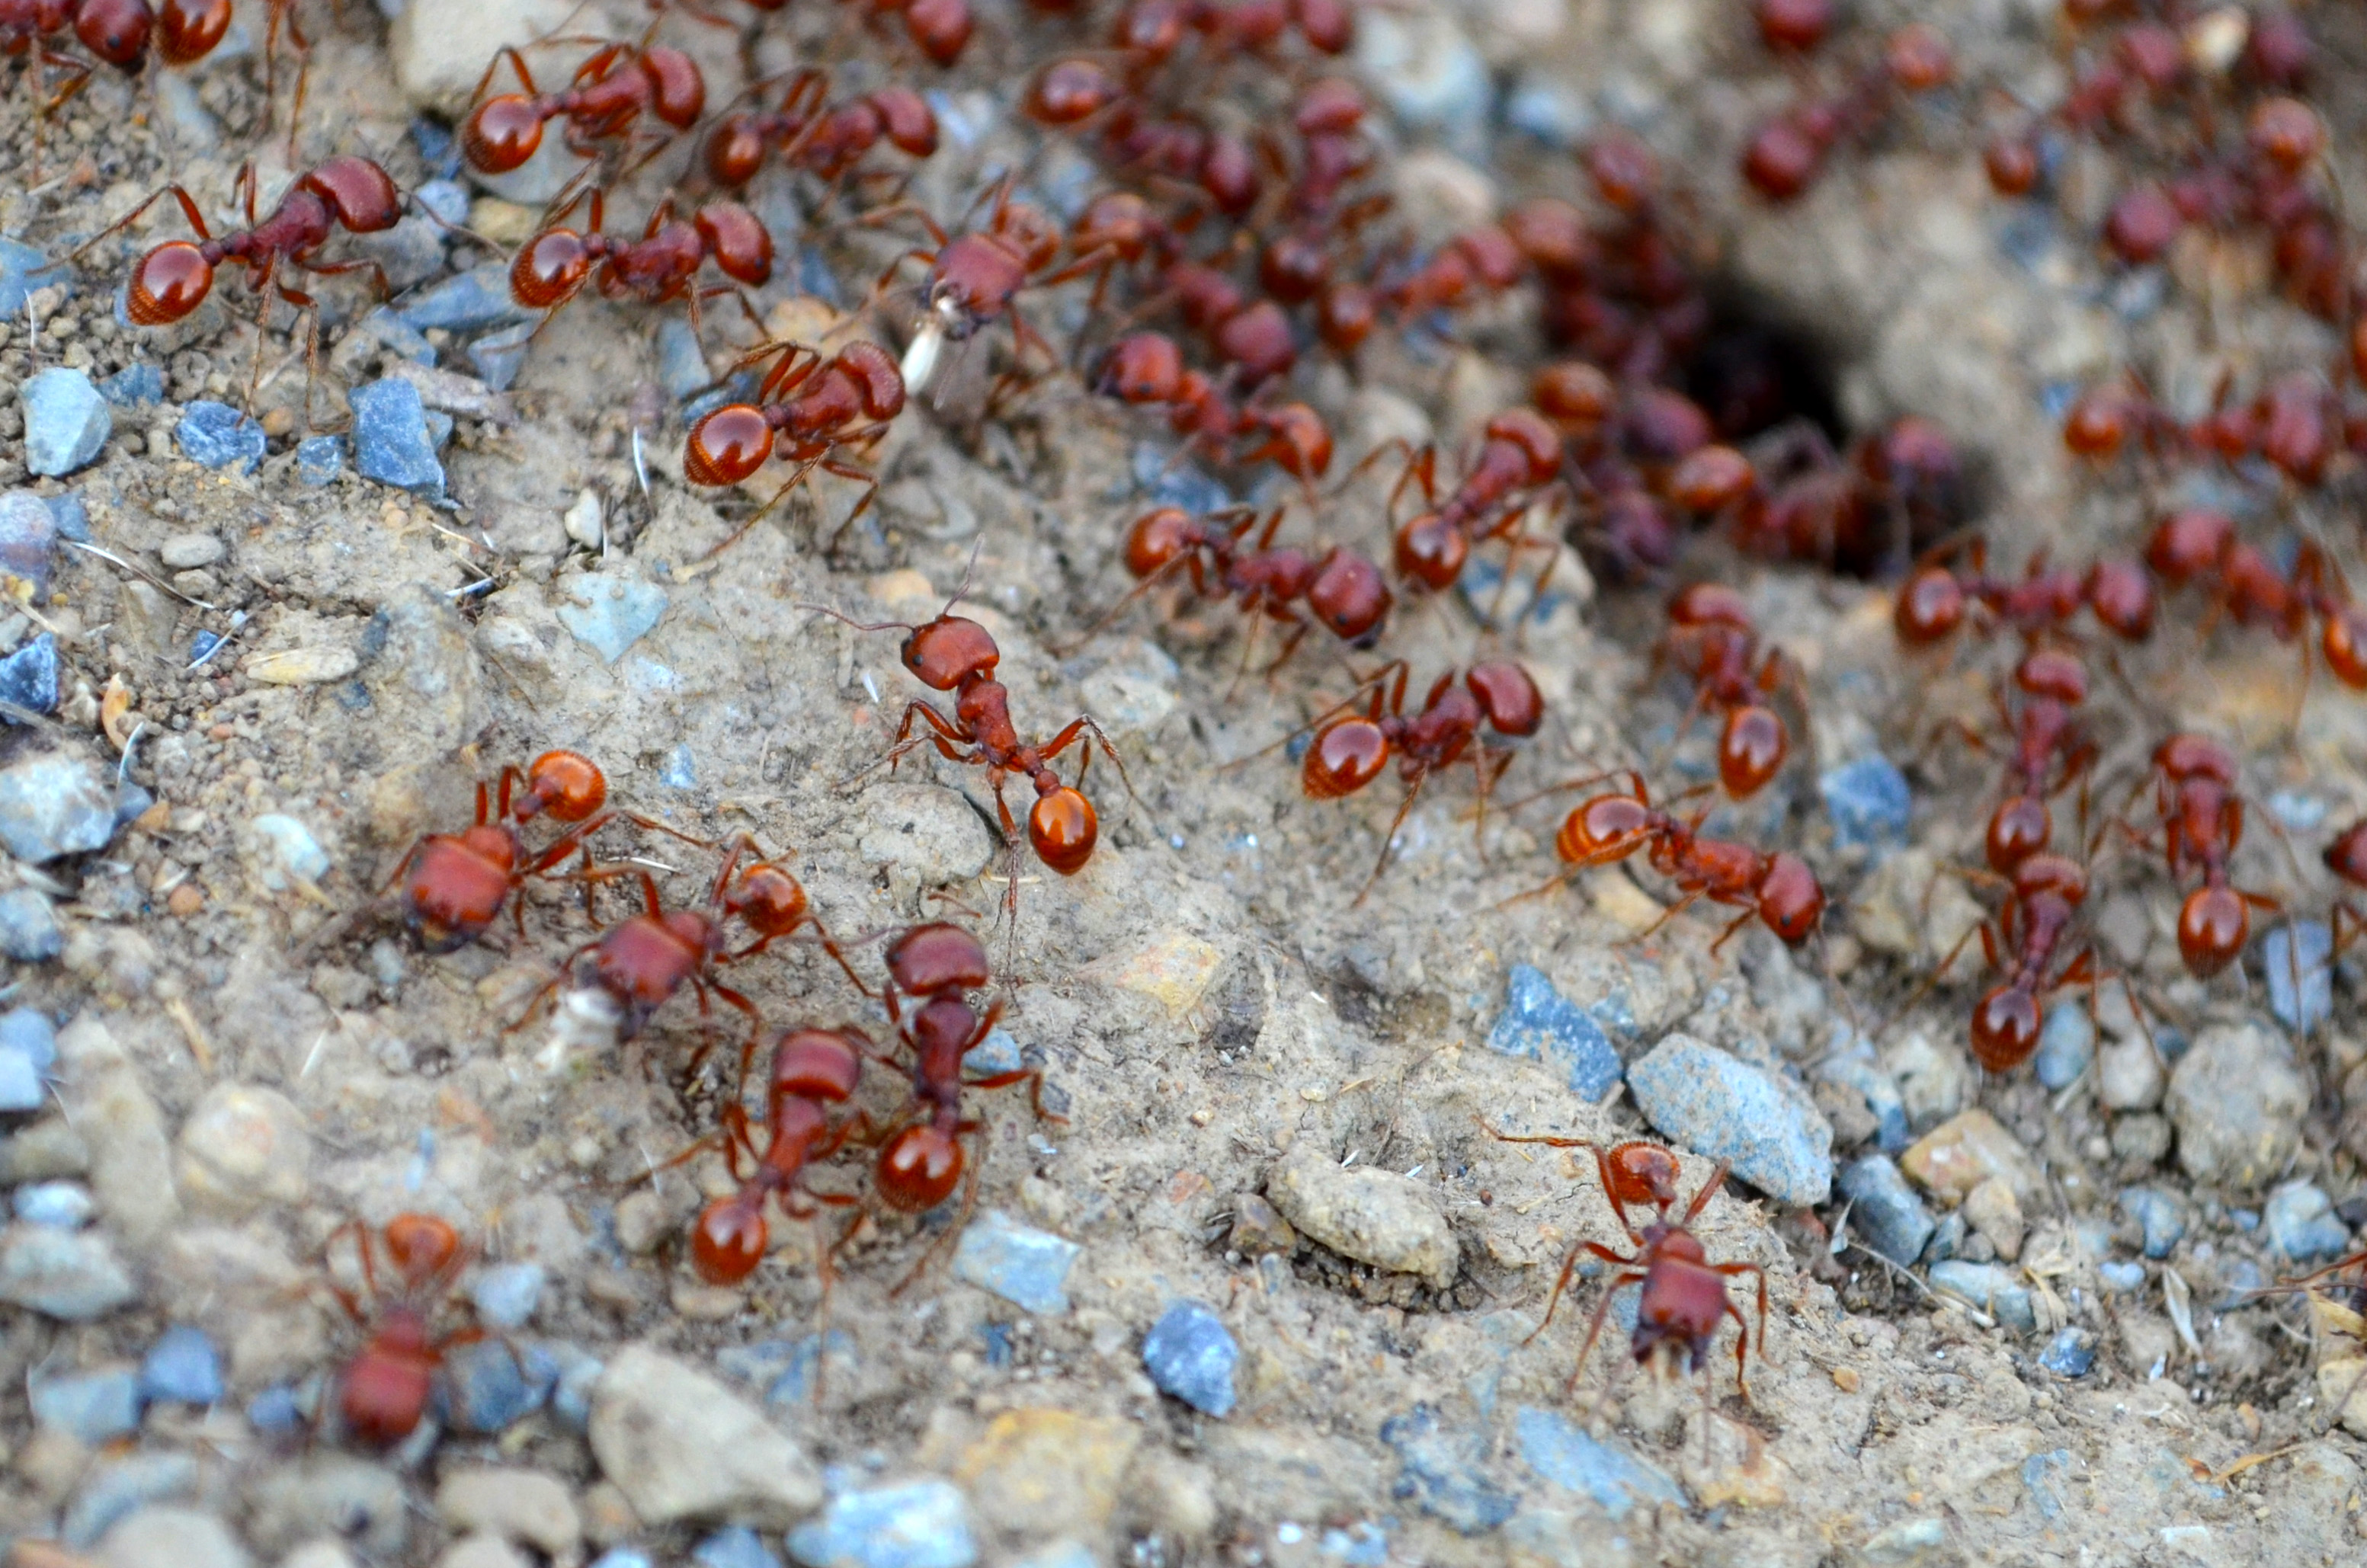 Ants photo